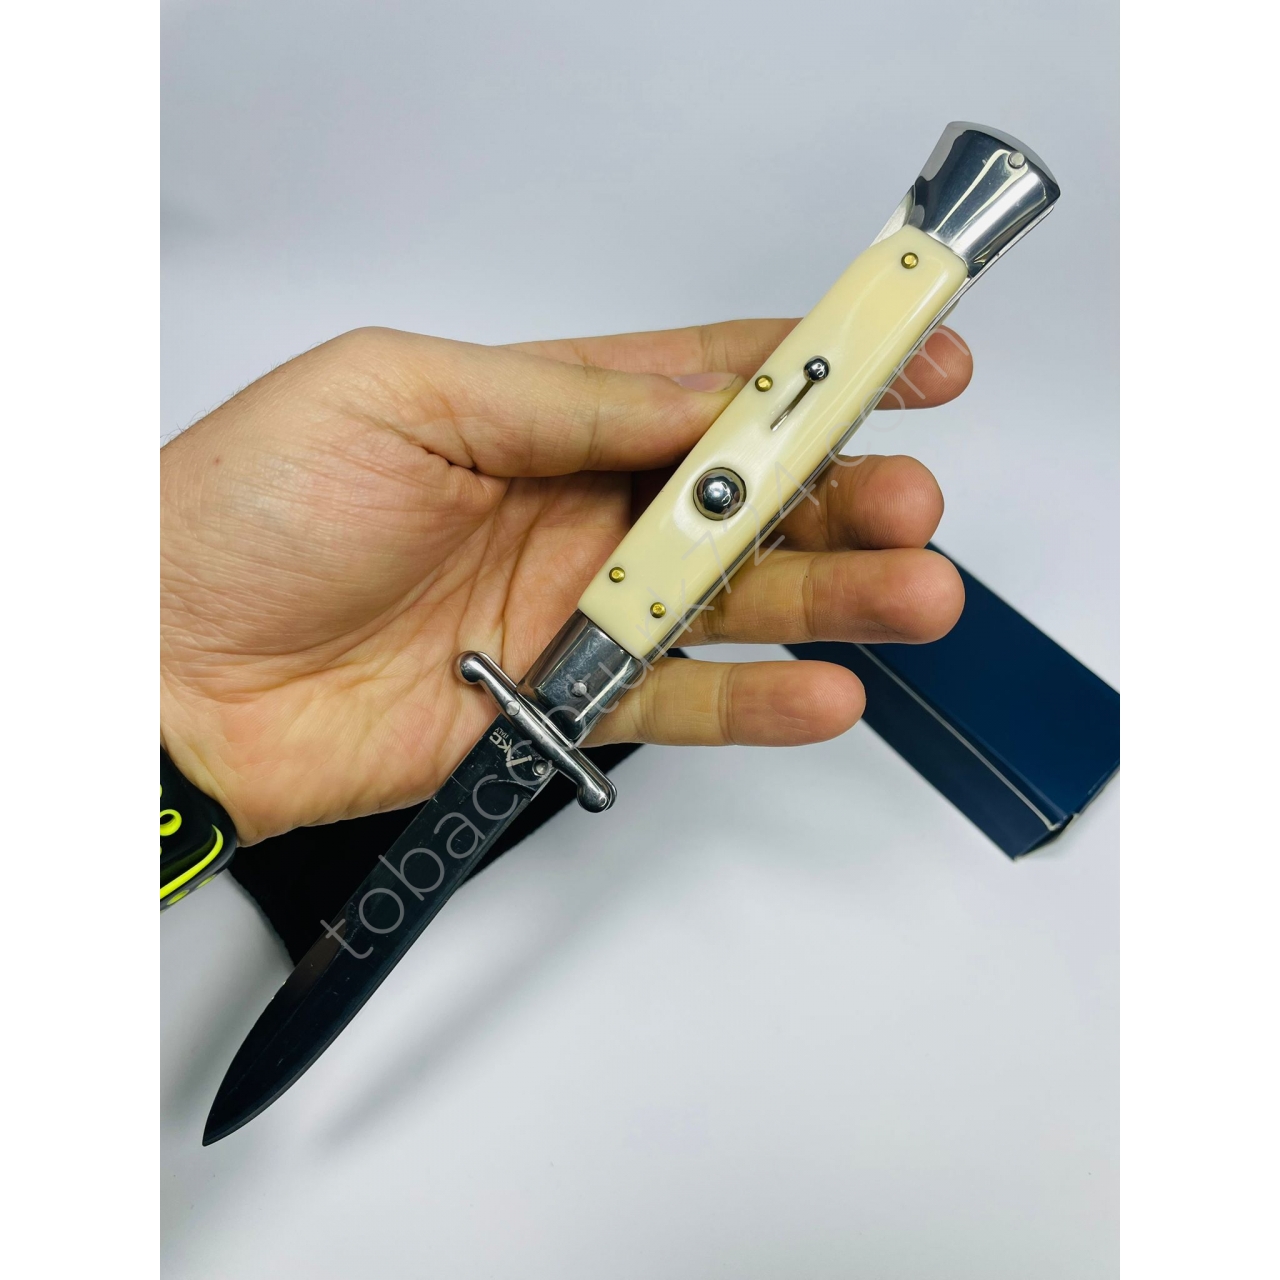 Akc Marka İtalyan Kemik Kasa MetalRenk Bıçak //25cm-Yeniseri